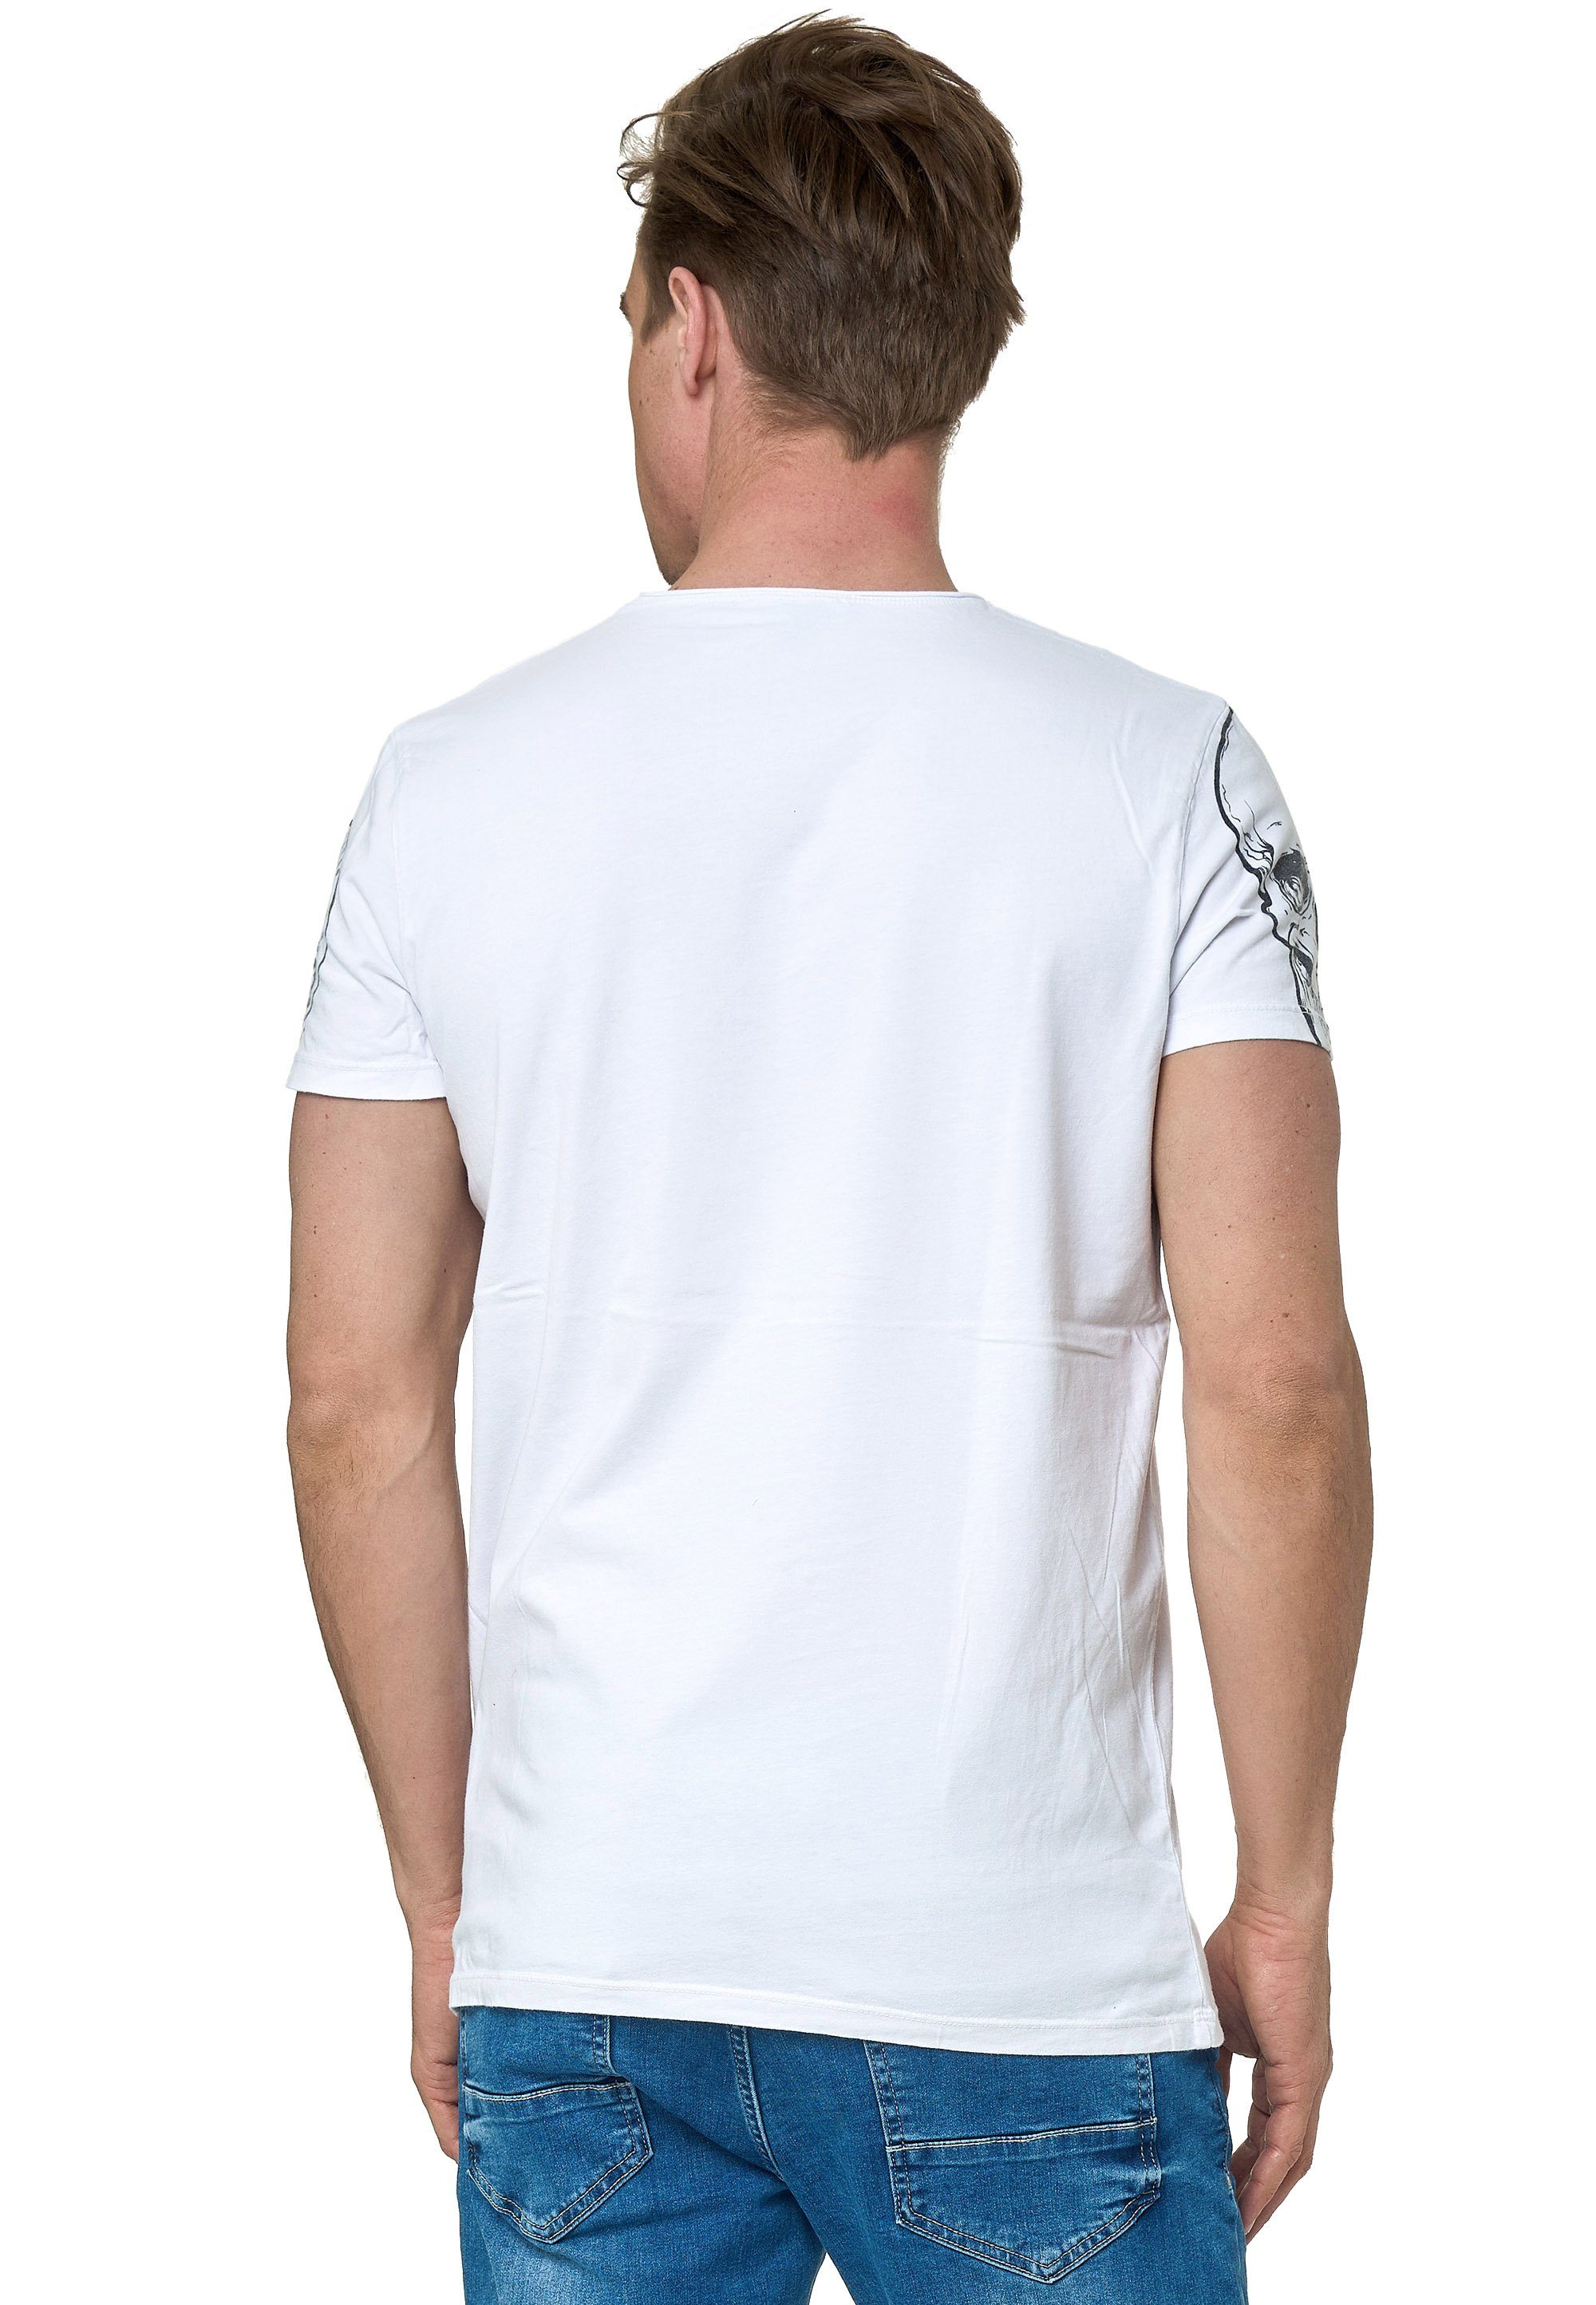 coolem Neal Rusty mit weiß Frontprint T-Shirt